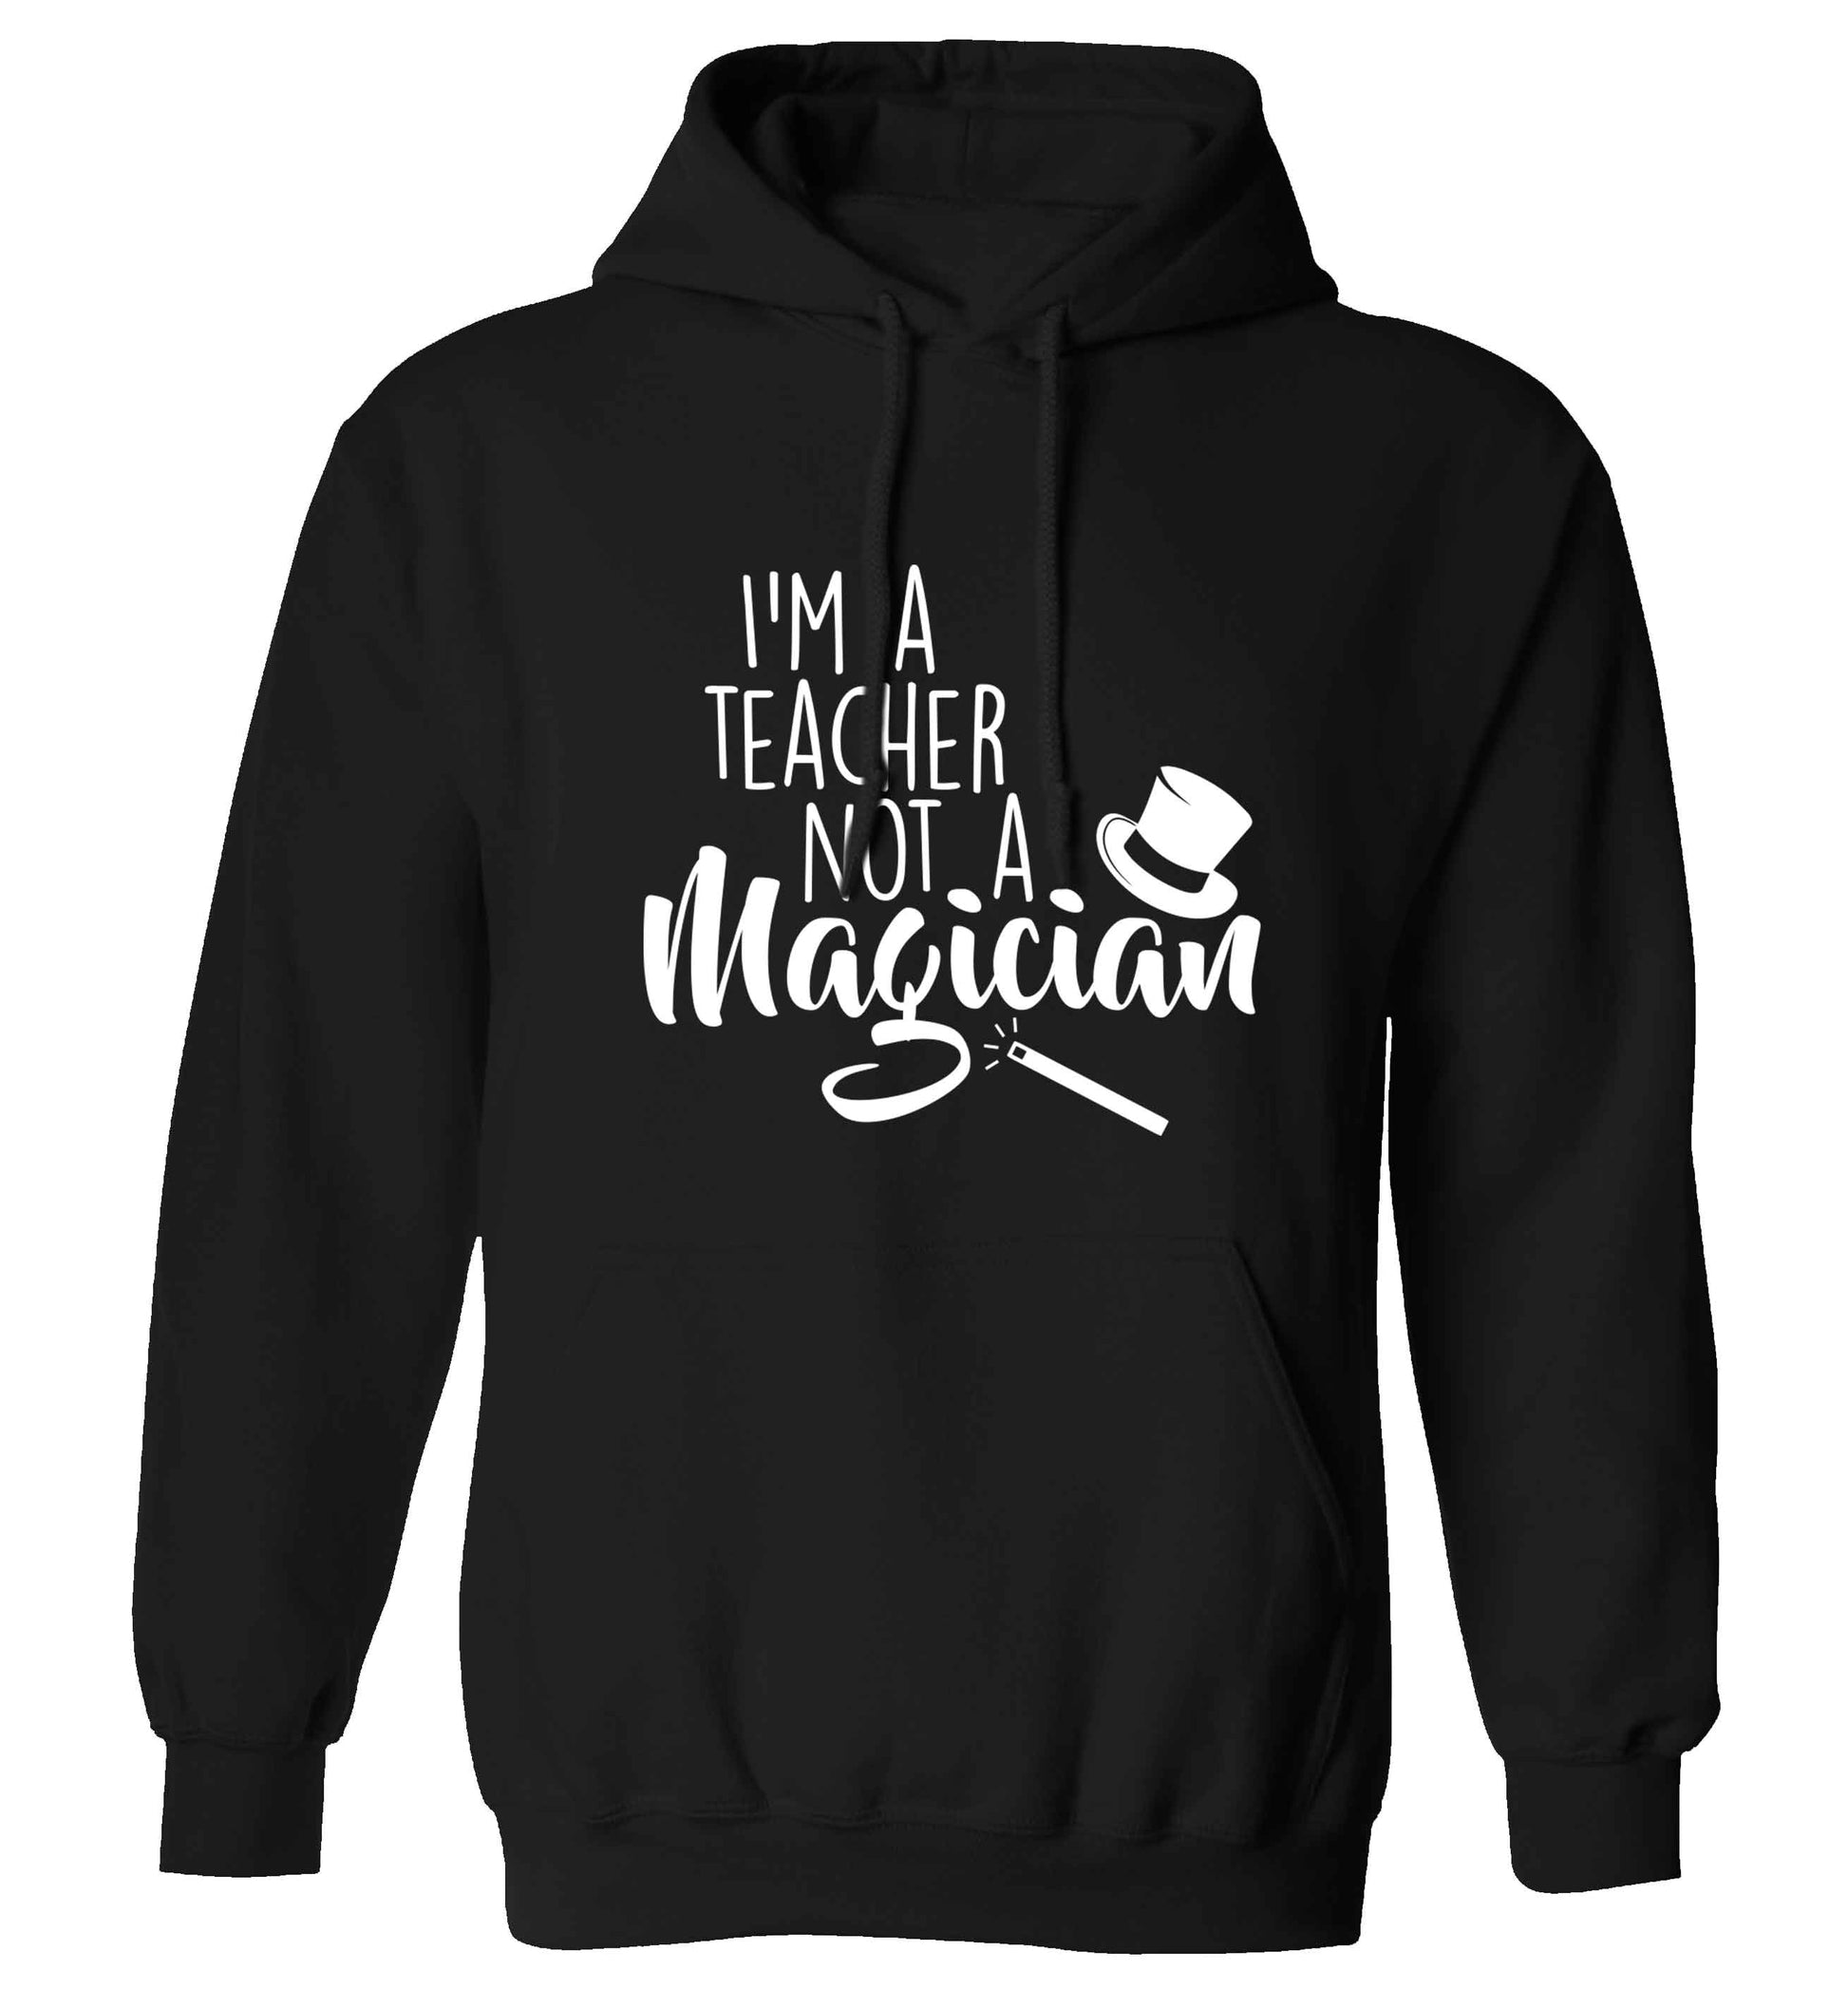 I'm a teacher not a magician adults unisex black hoodie 2XL